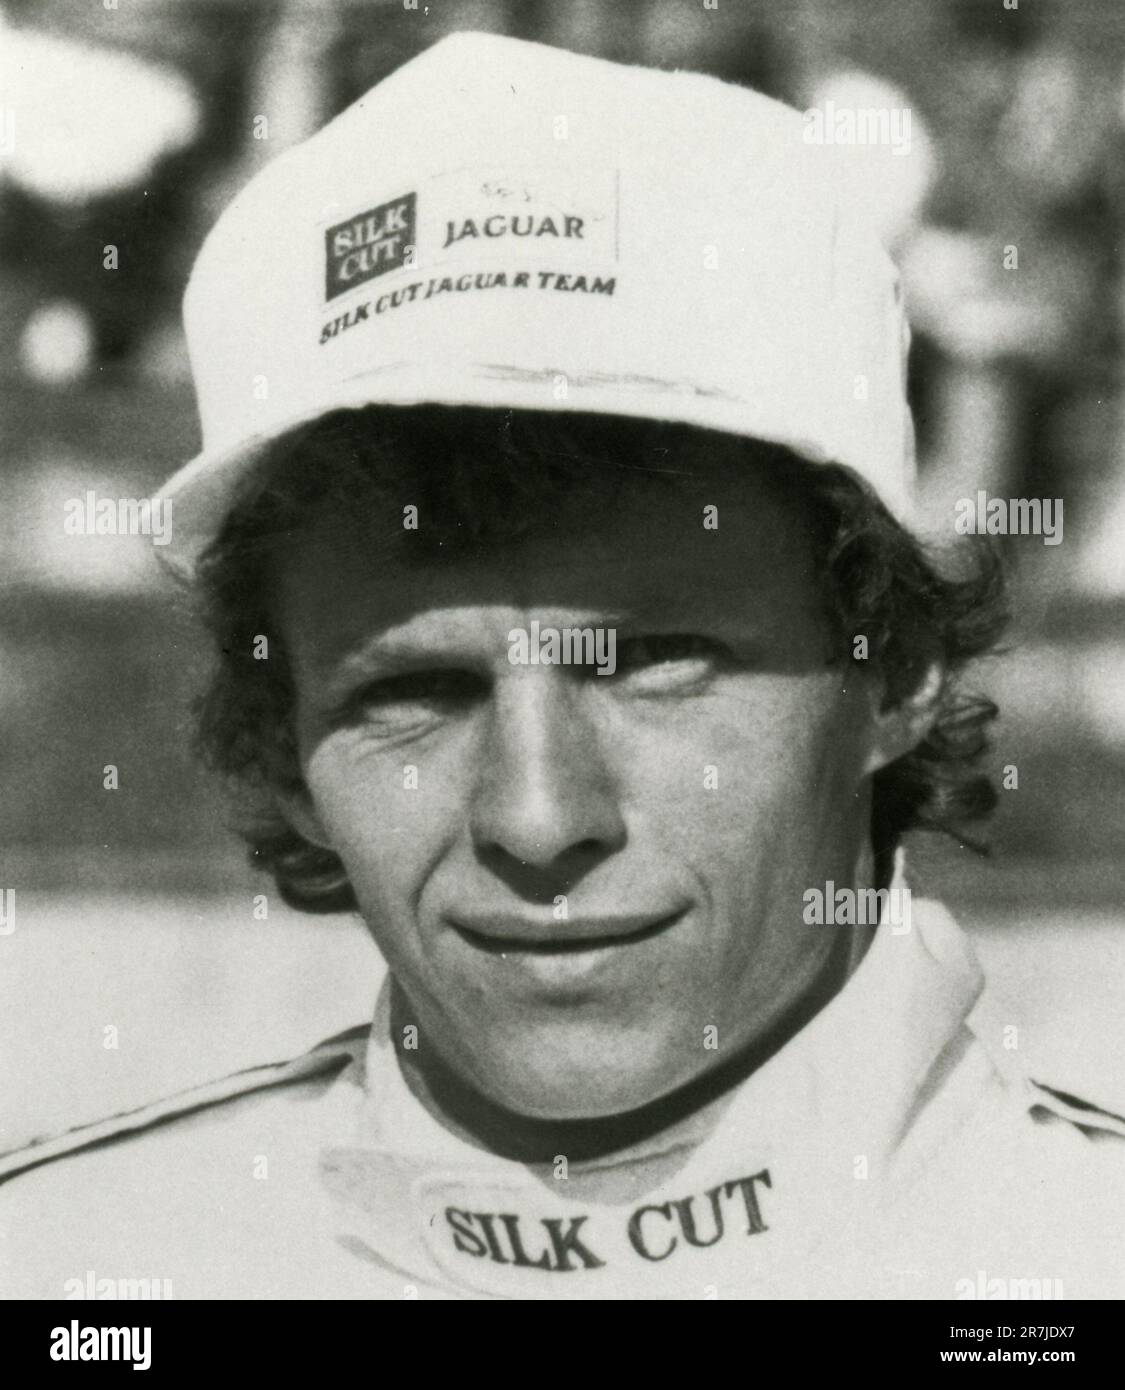 Dutch car racing Jaguar Silk Cut pilot Jan Lammers, UK 1987 Stock Photo